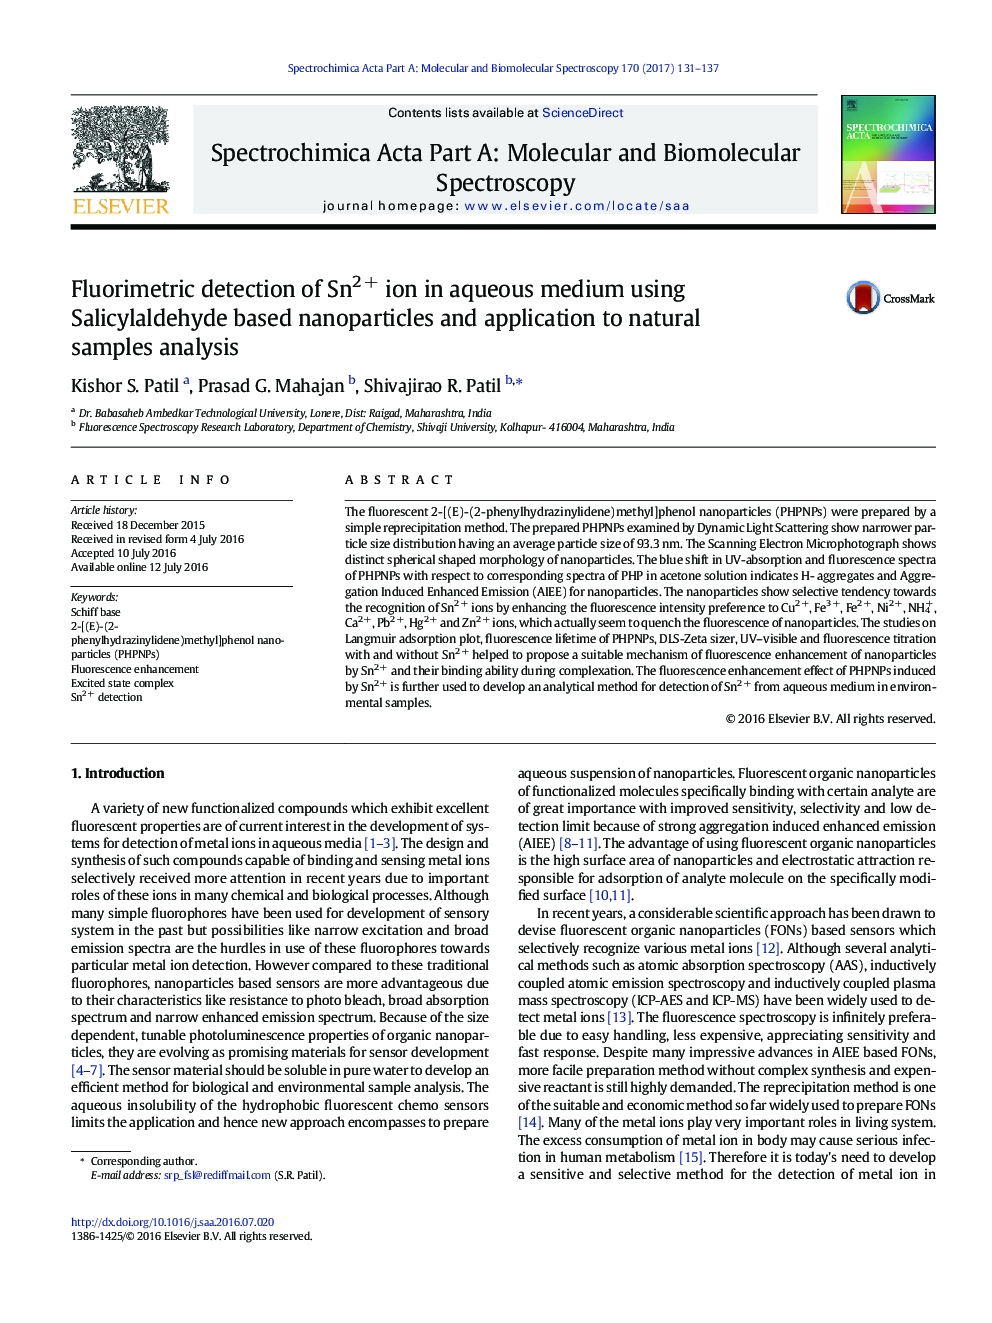 تشخیص فلوریمتری Sn2 + یون در محیط آبی با استفاده از نانوذرات بر پایه Salicylaldehyde و کاربرد آن در تجزیه و تحلیل نمونه های طبیعی